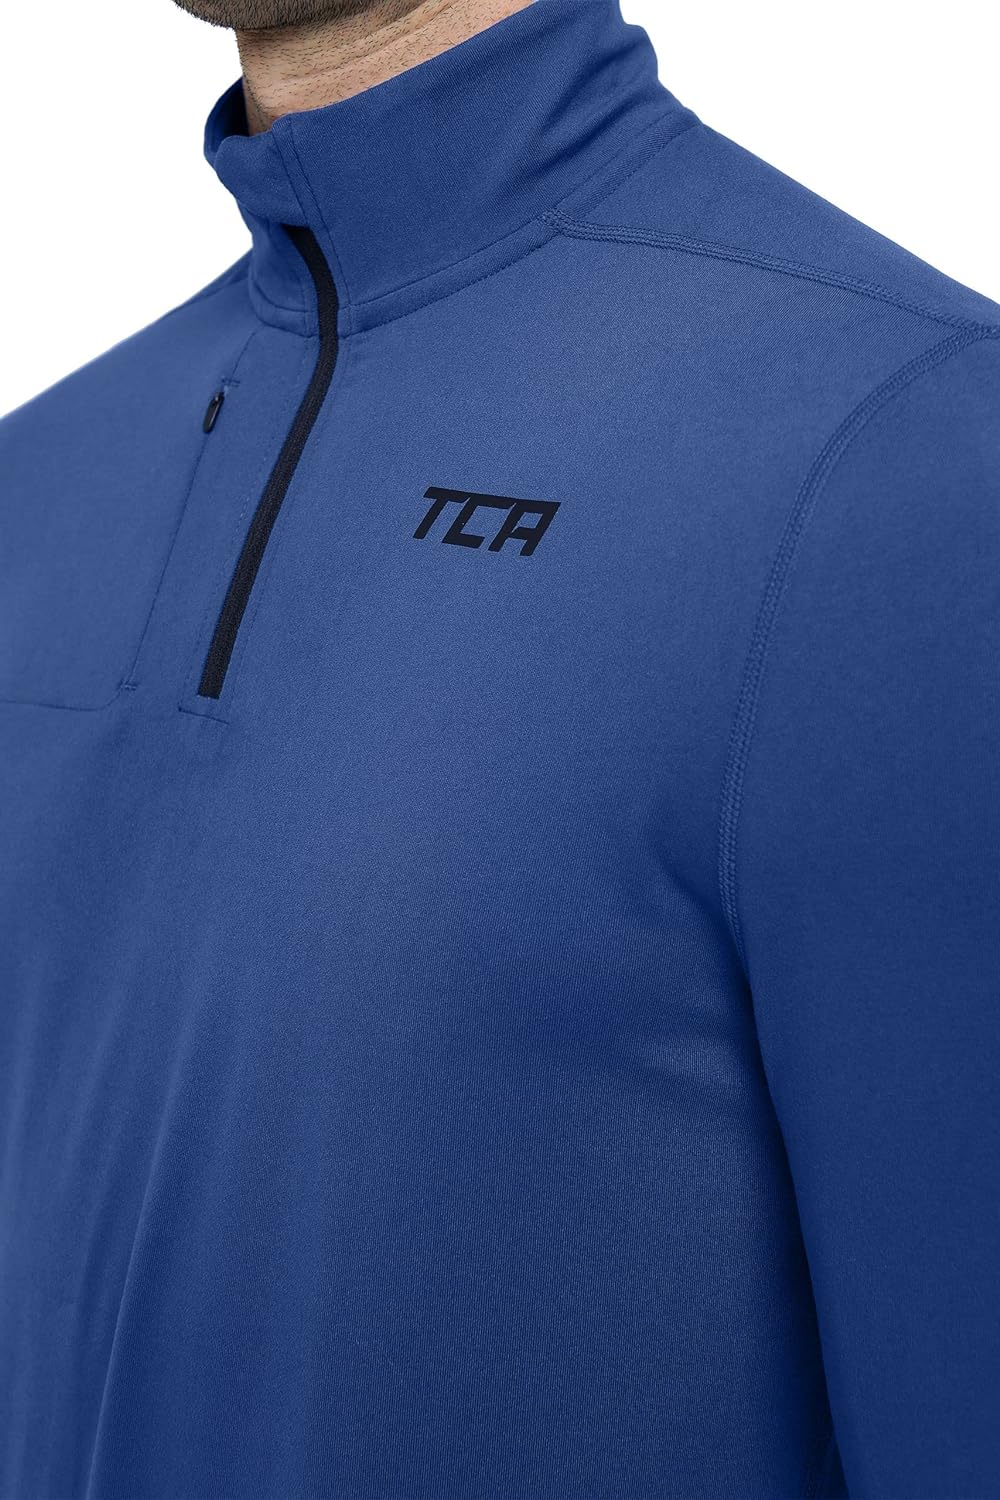 TCA Fusion Pro T-Shirt de Course Manches Longues Quickdry avec Fermeture Éclair à Mi-Poitrine pour Homme - fitnessterapy